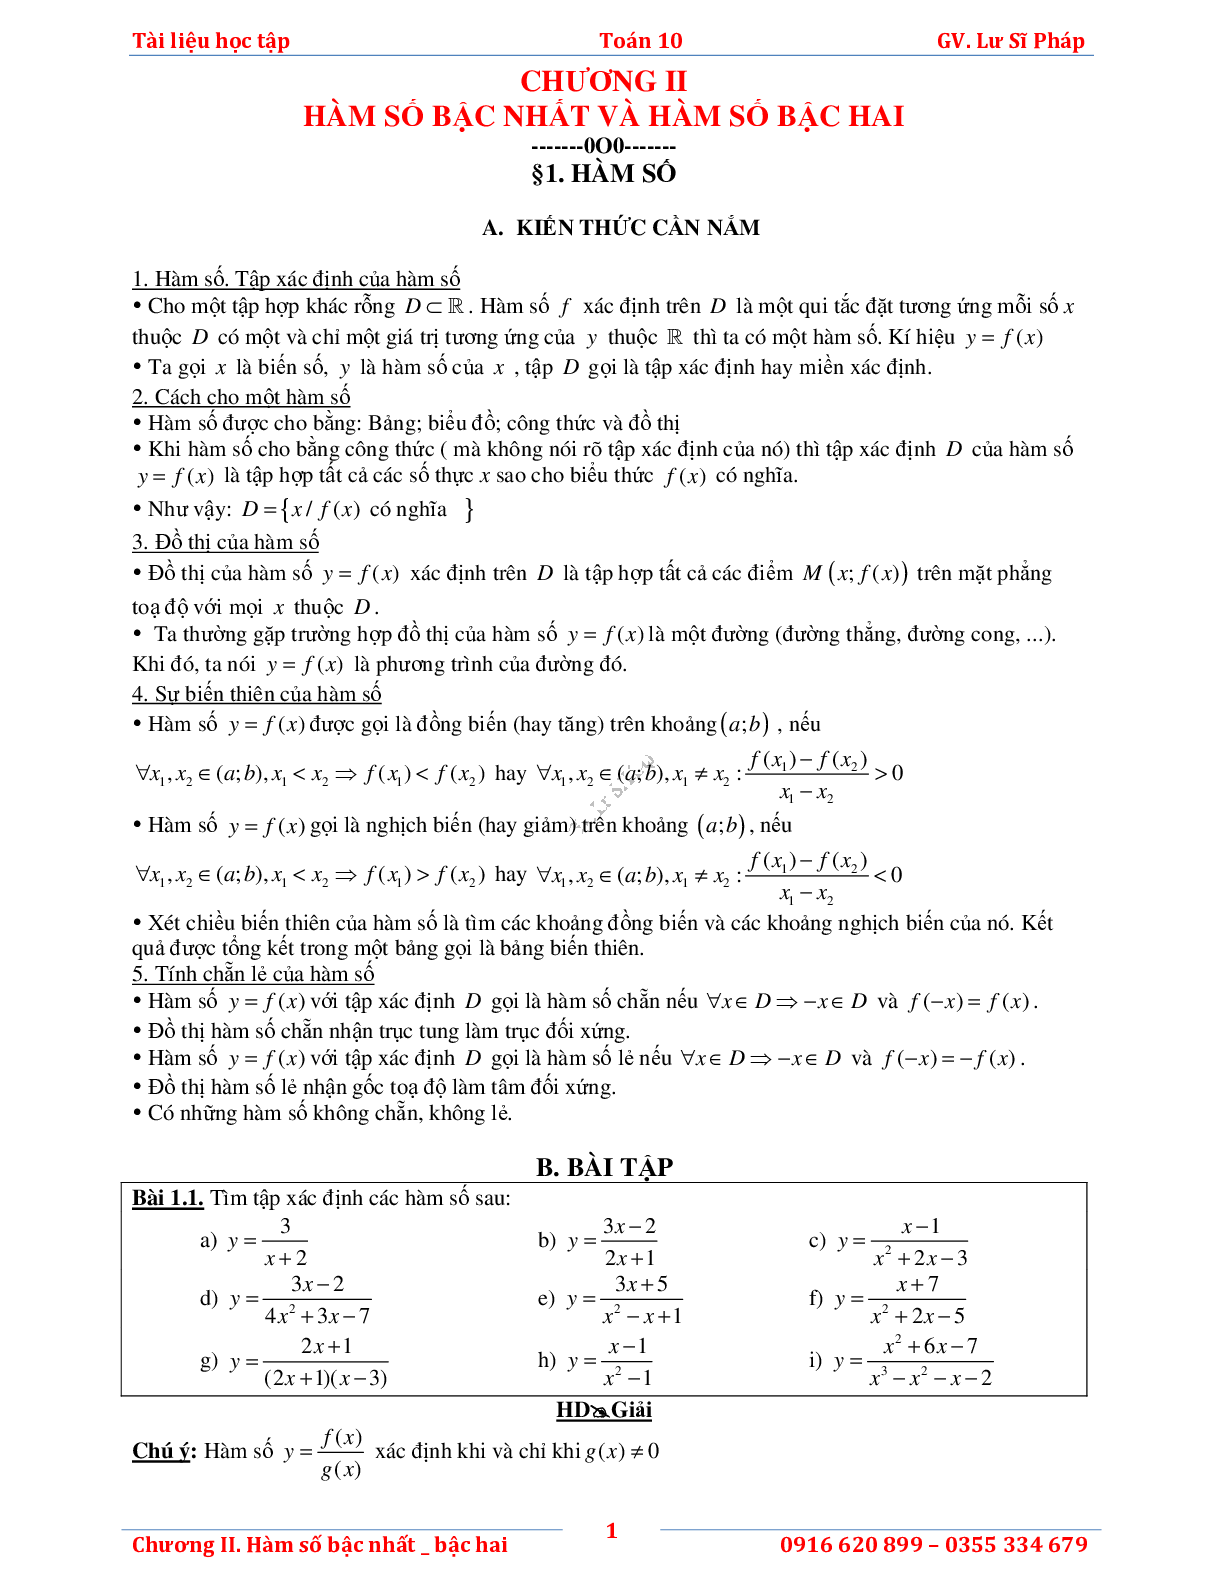 Tài liệu học tập hàm số bậc nhất và bậc hai (trang 5)